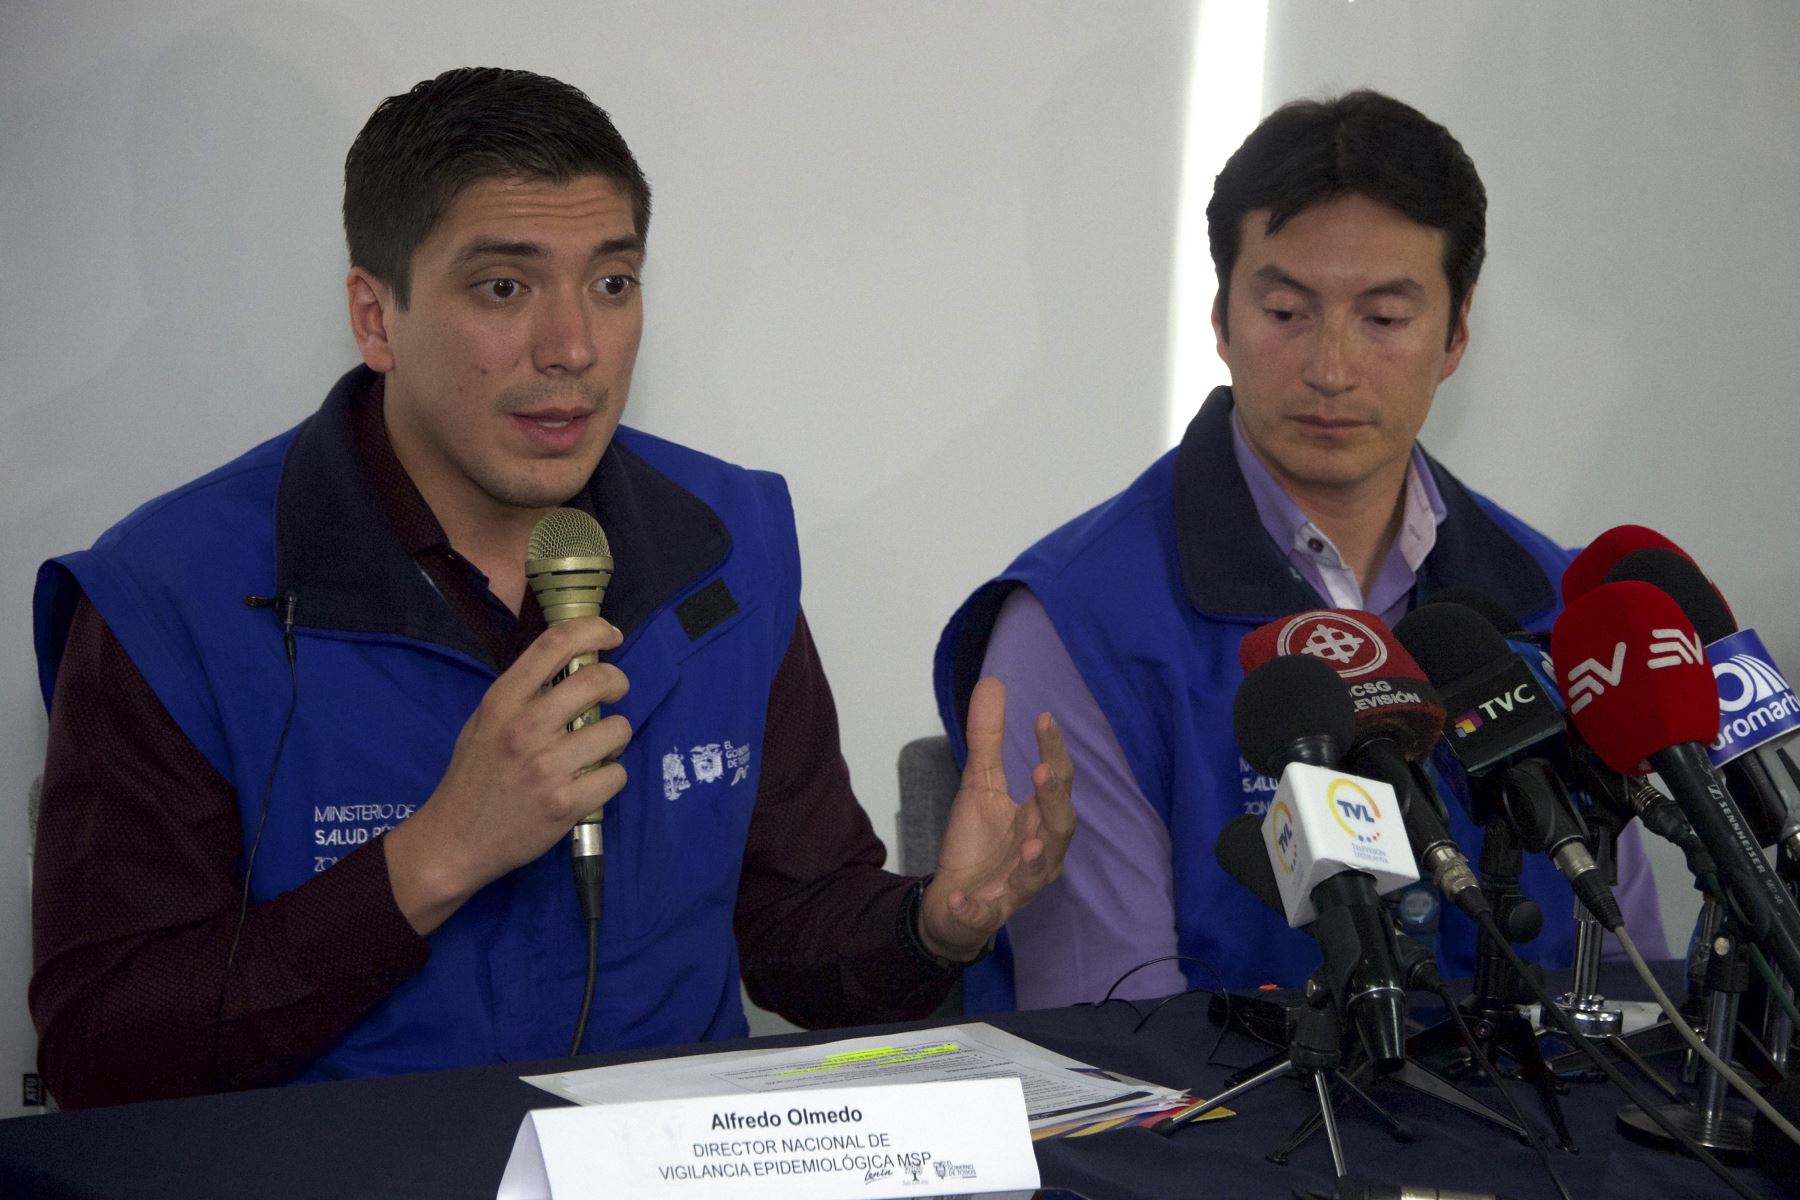 Autoridades sanitarias ecuatorianas piden esperar con calma los resultados sobre un posible caso de coronavirus. Foto: AFP.